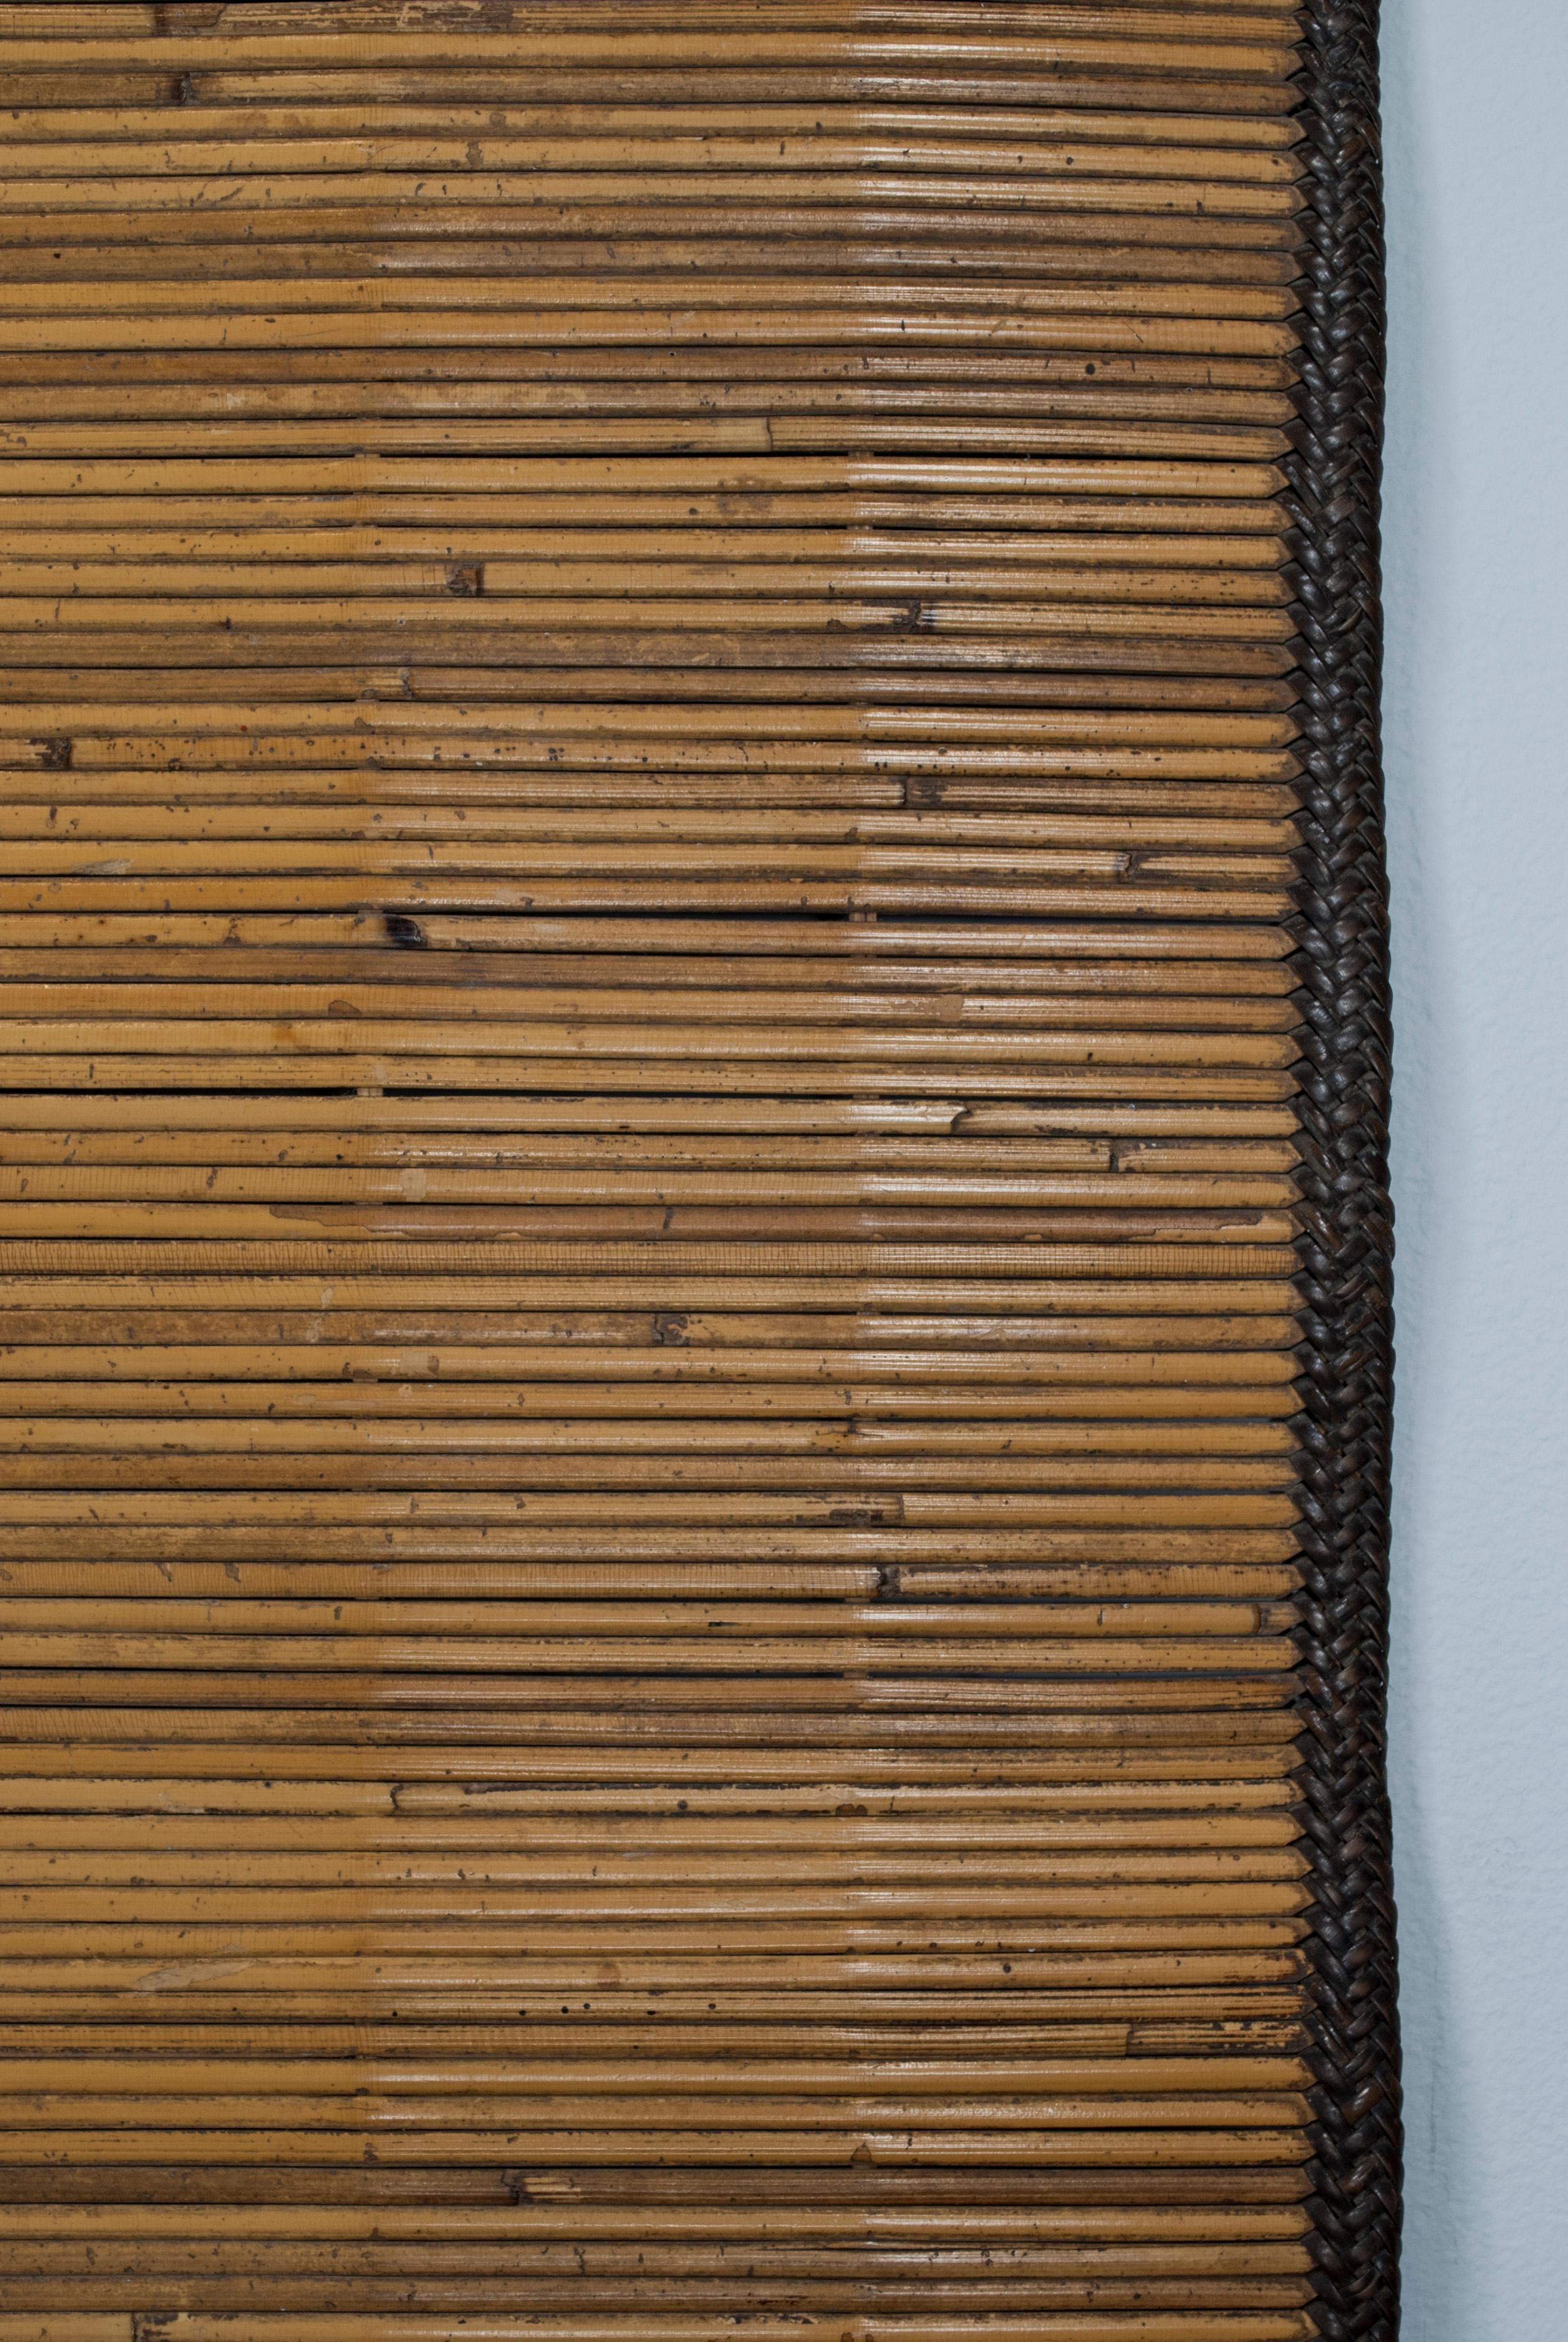 CIRCA 1900 Zeremonienmatte aus Schilf, Sumatra, Indonesien

Eine wunderbar erhaltene Schilfmatte, die bei zeremoniellen Anlässen im Süden Sumatras, Indonesien, verwendet wurde. Die Endplatten sind mit Schürhaken in einem unechten Ikat-Muster